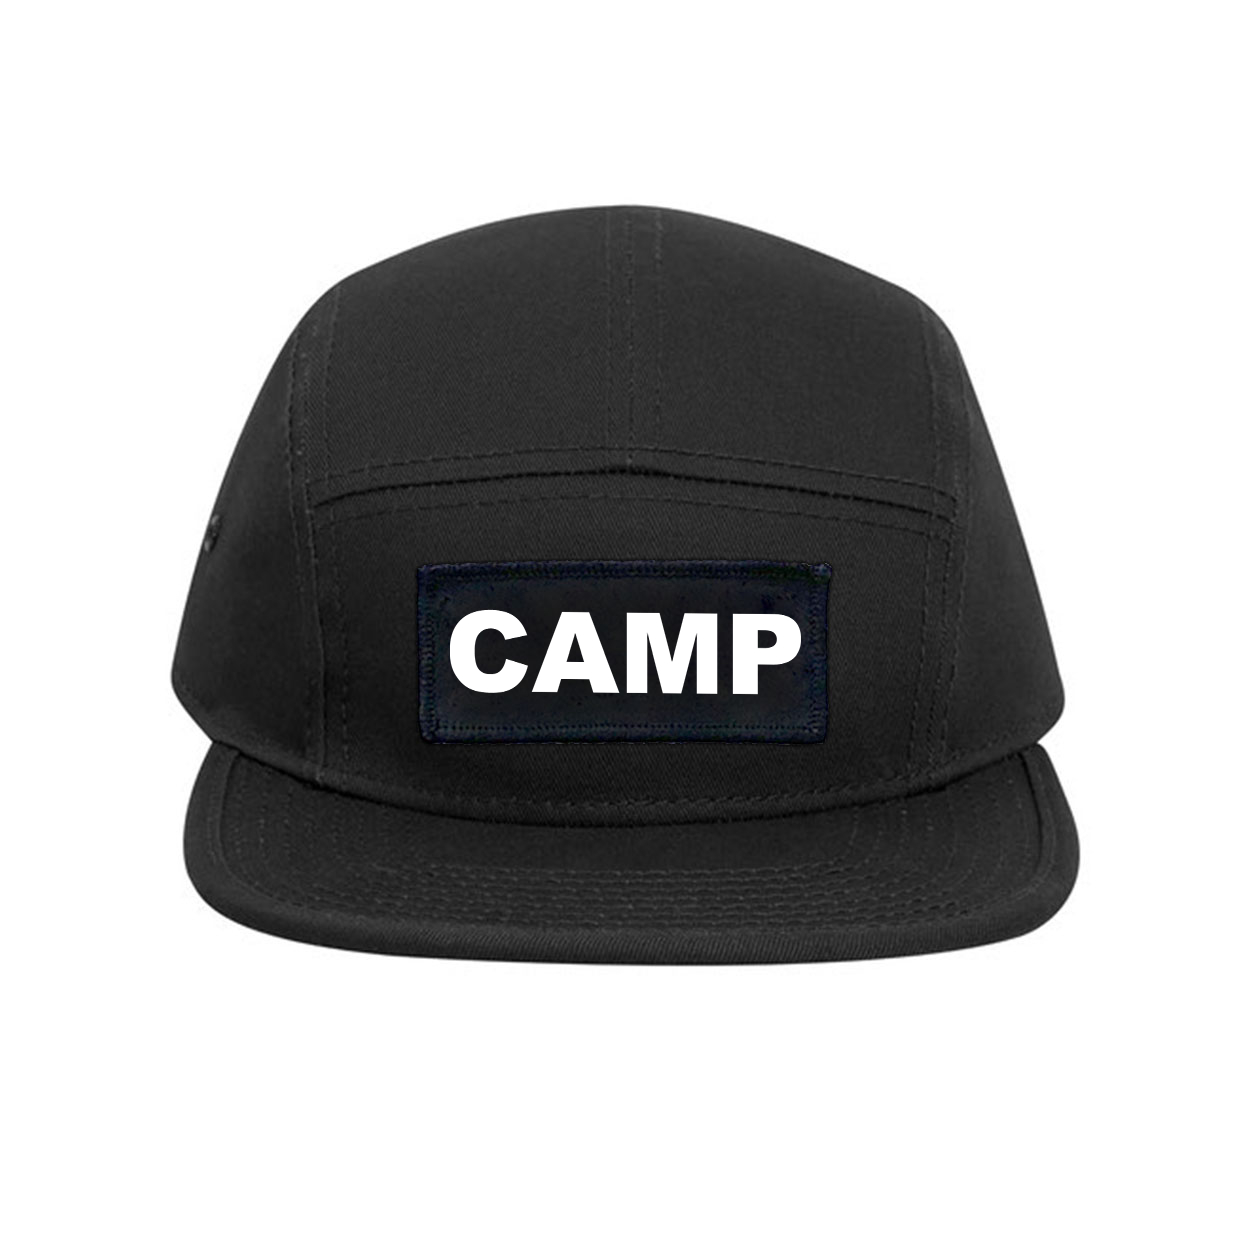 Camp Brand Logo Classic Woven Patch Classic Camper Hat Black